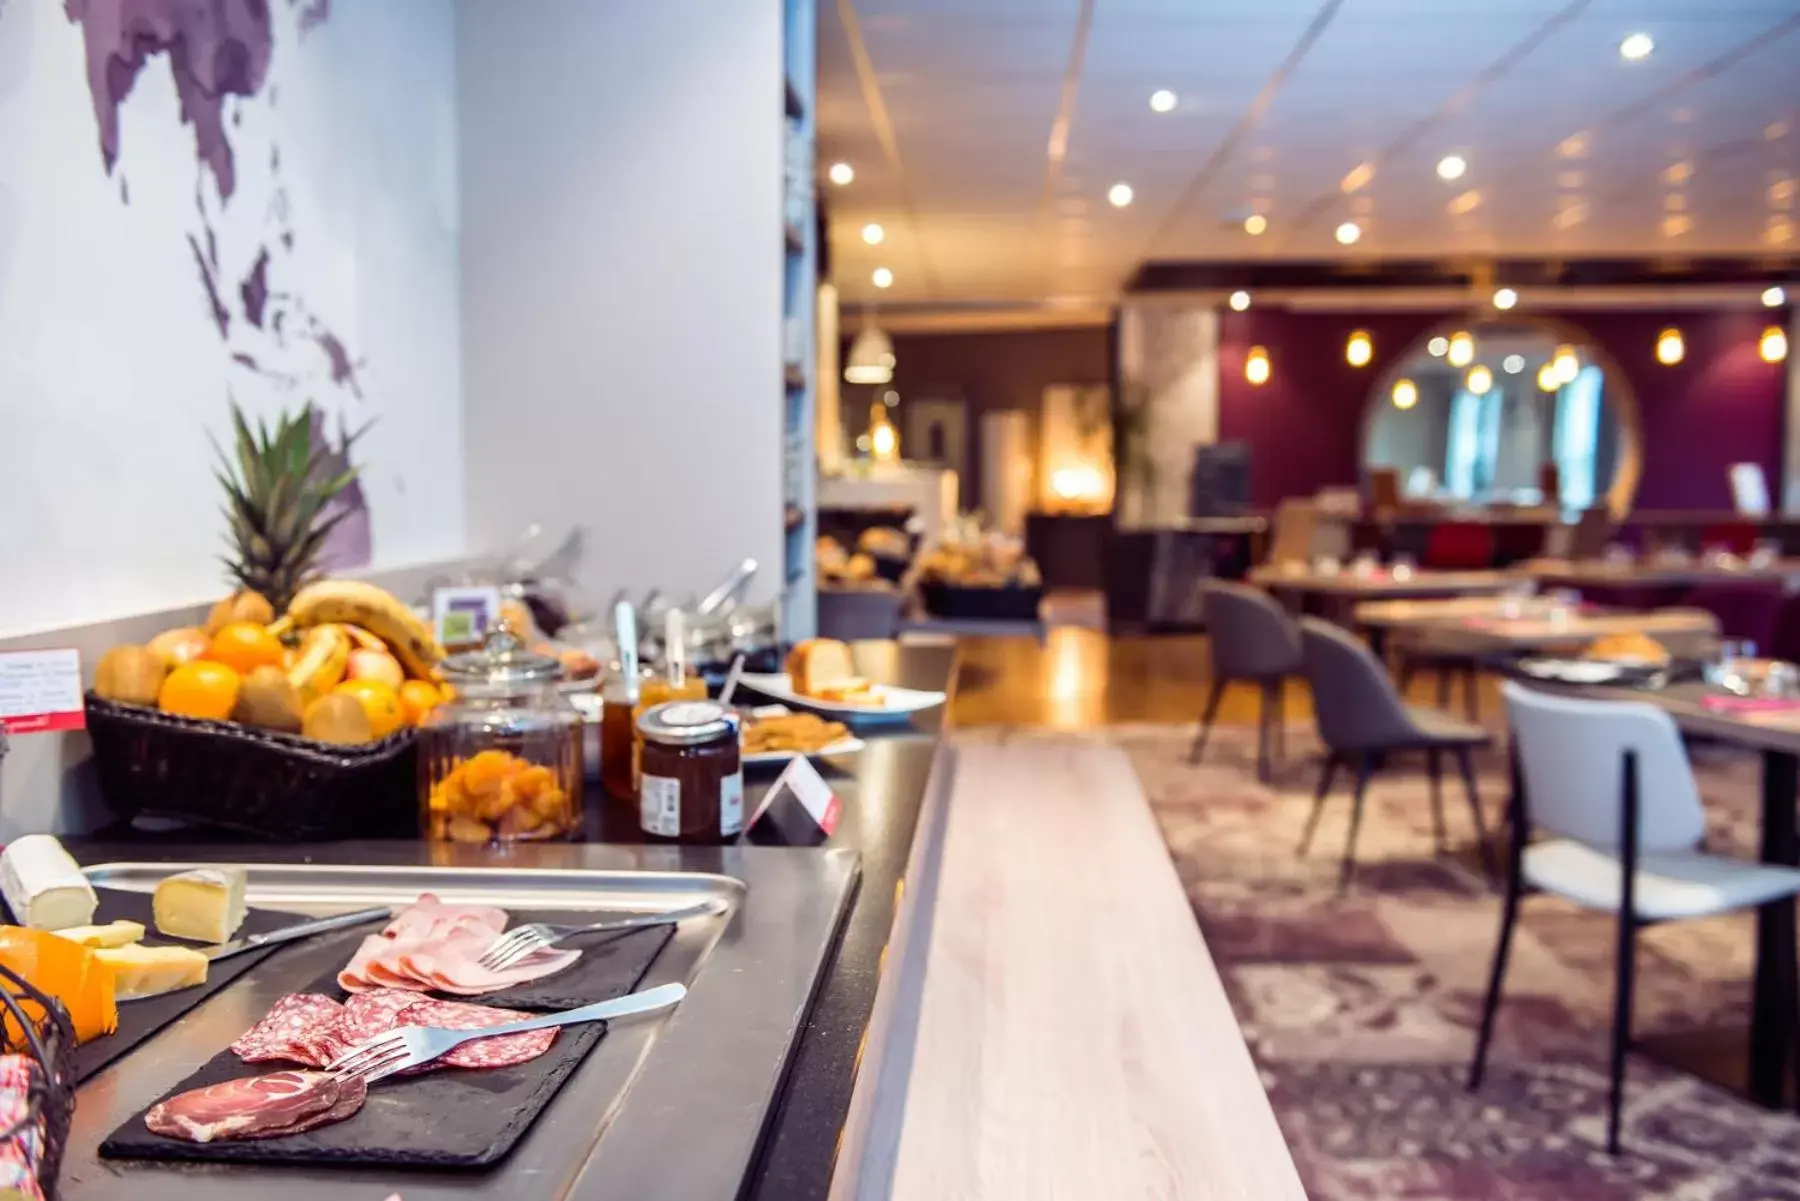 Buffet breakfast, Restaurant/Places to Eat in Brit Hotel Brest Le Relecq Kerhuon